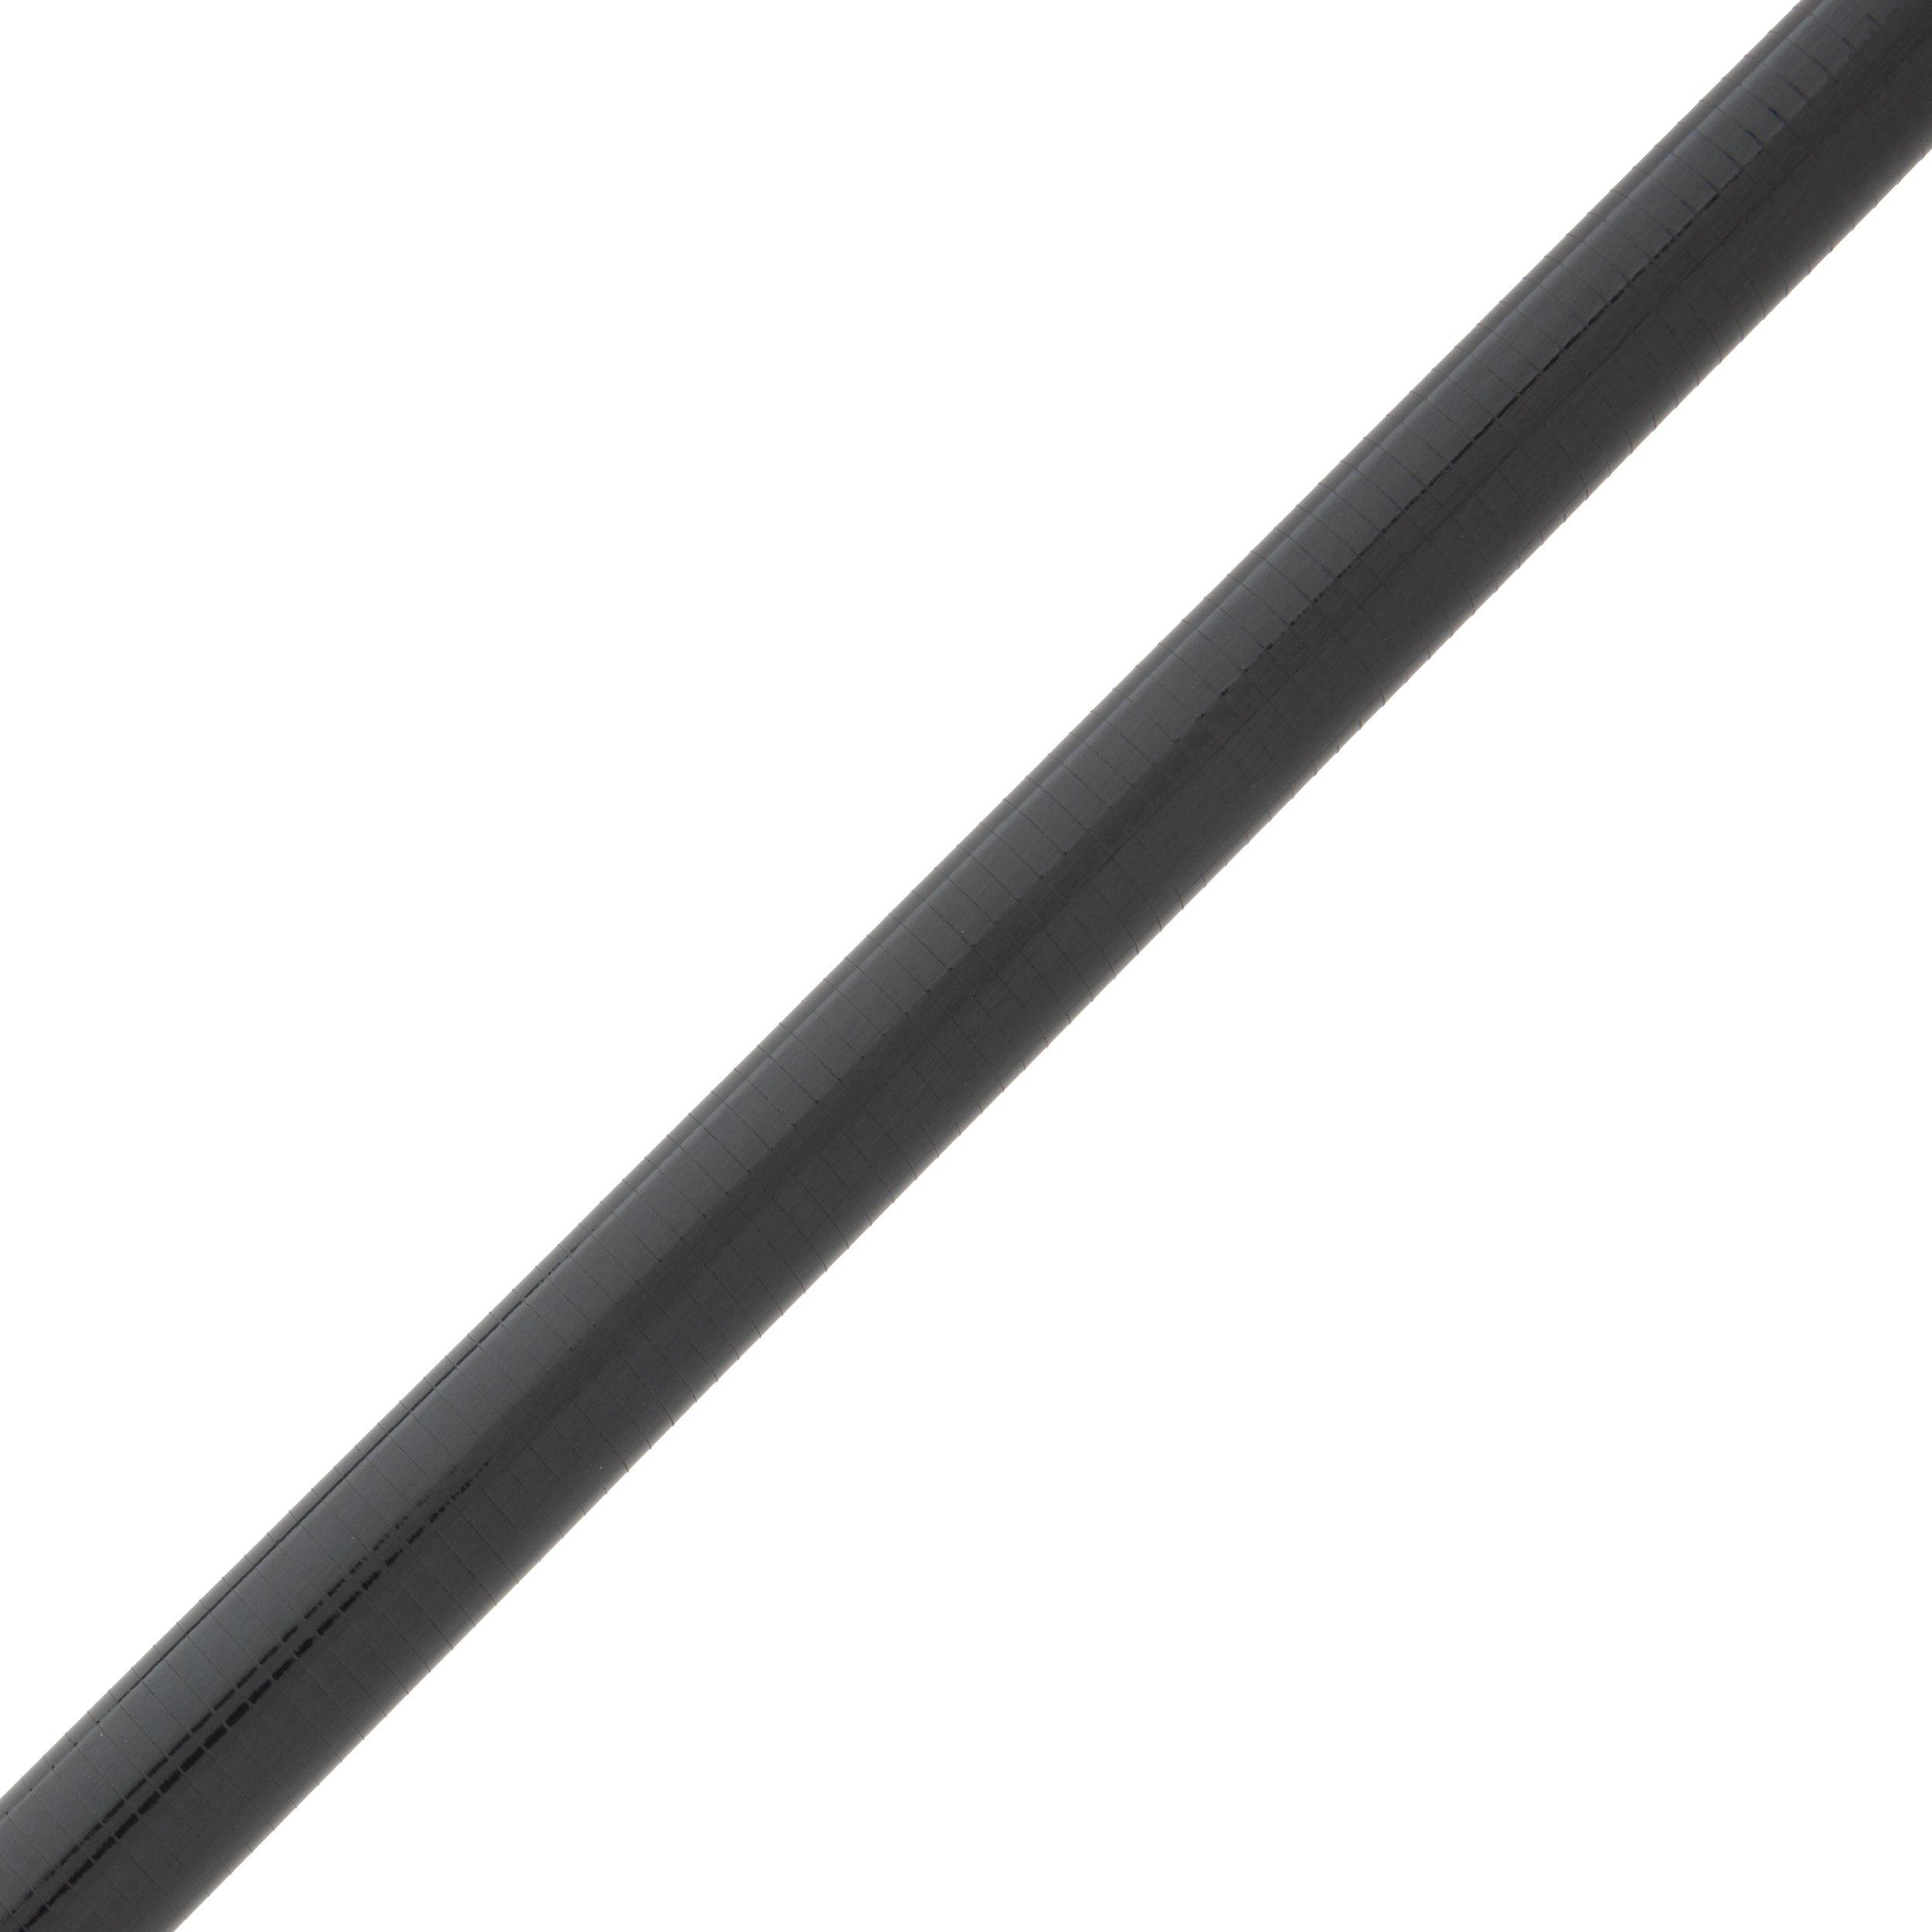 Cashion CR6r Carbon Fiber Cranking Rod Blank - CR6r-iCB845